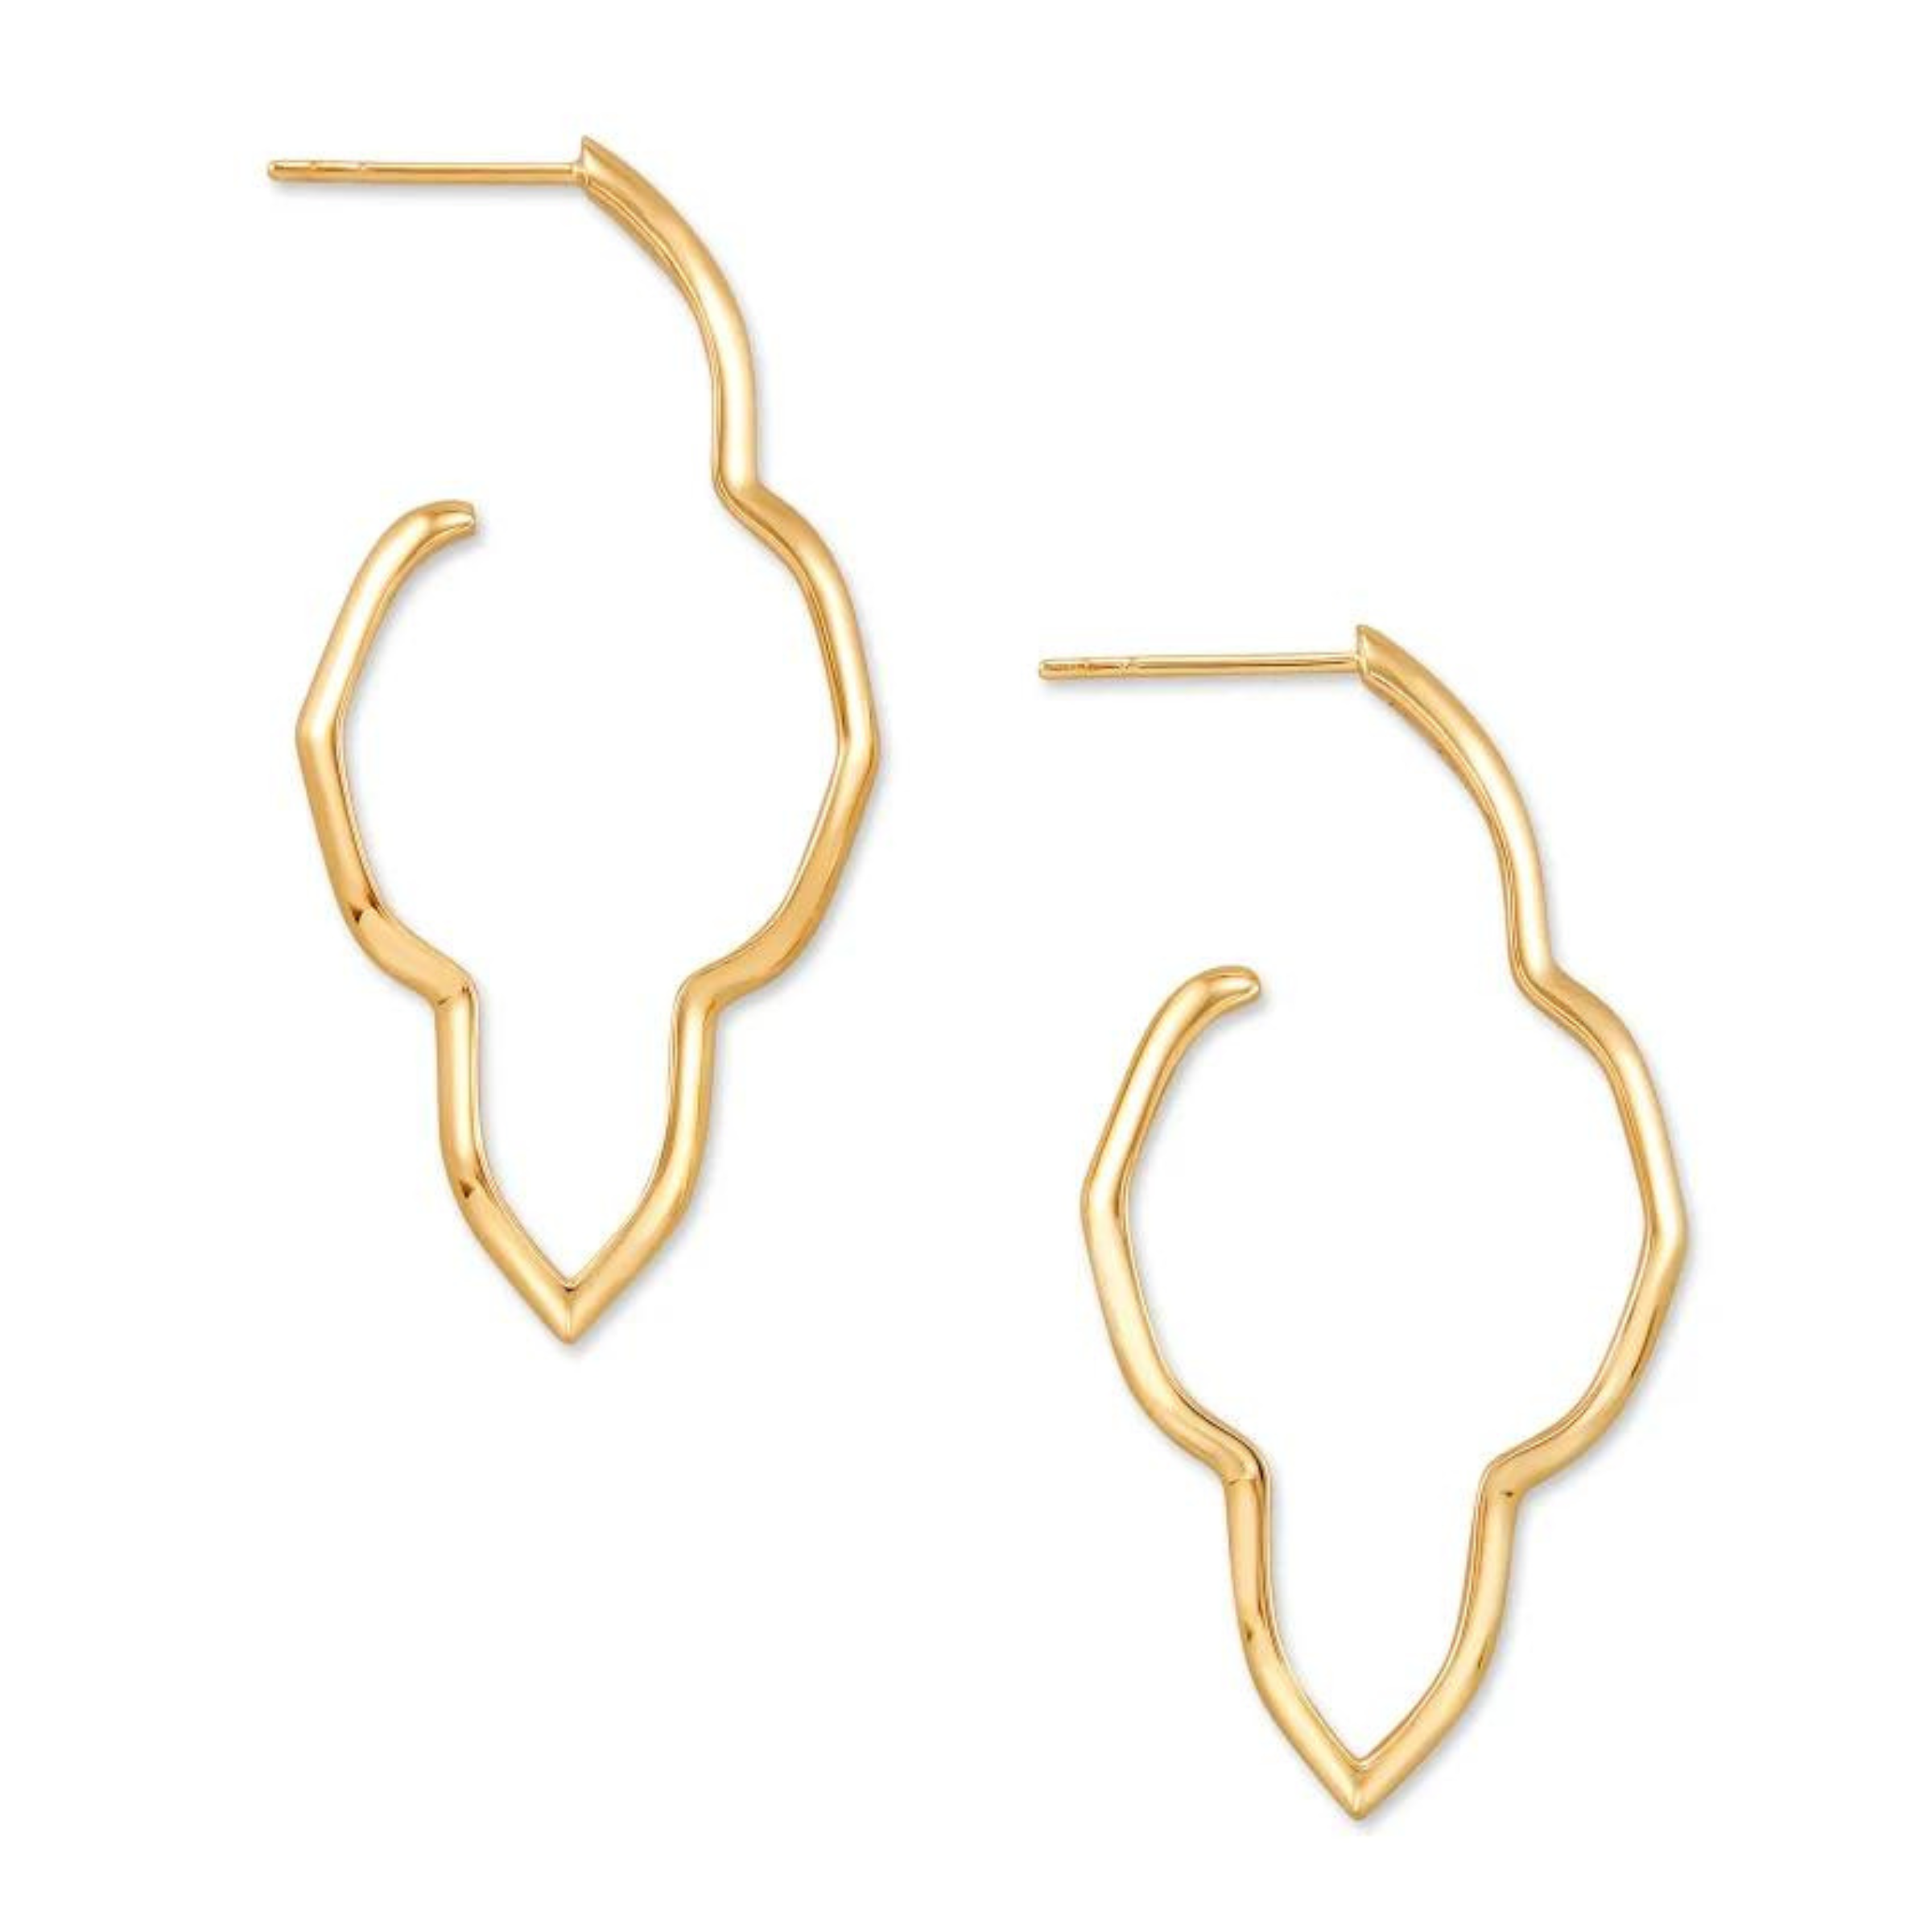 Kendra Scott | Darla Hoop Earrings in 18k Yellow Gold Vermeil